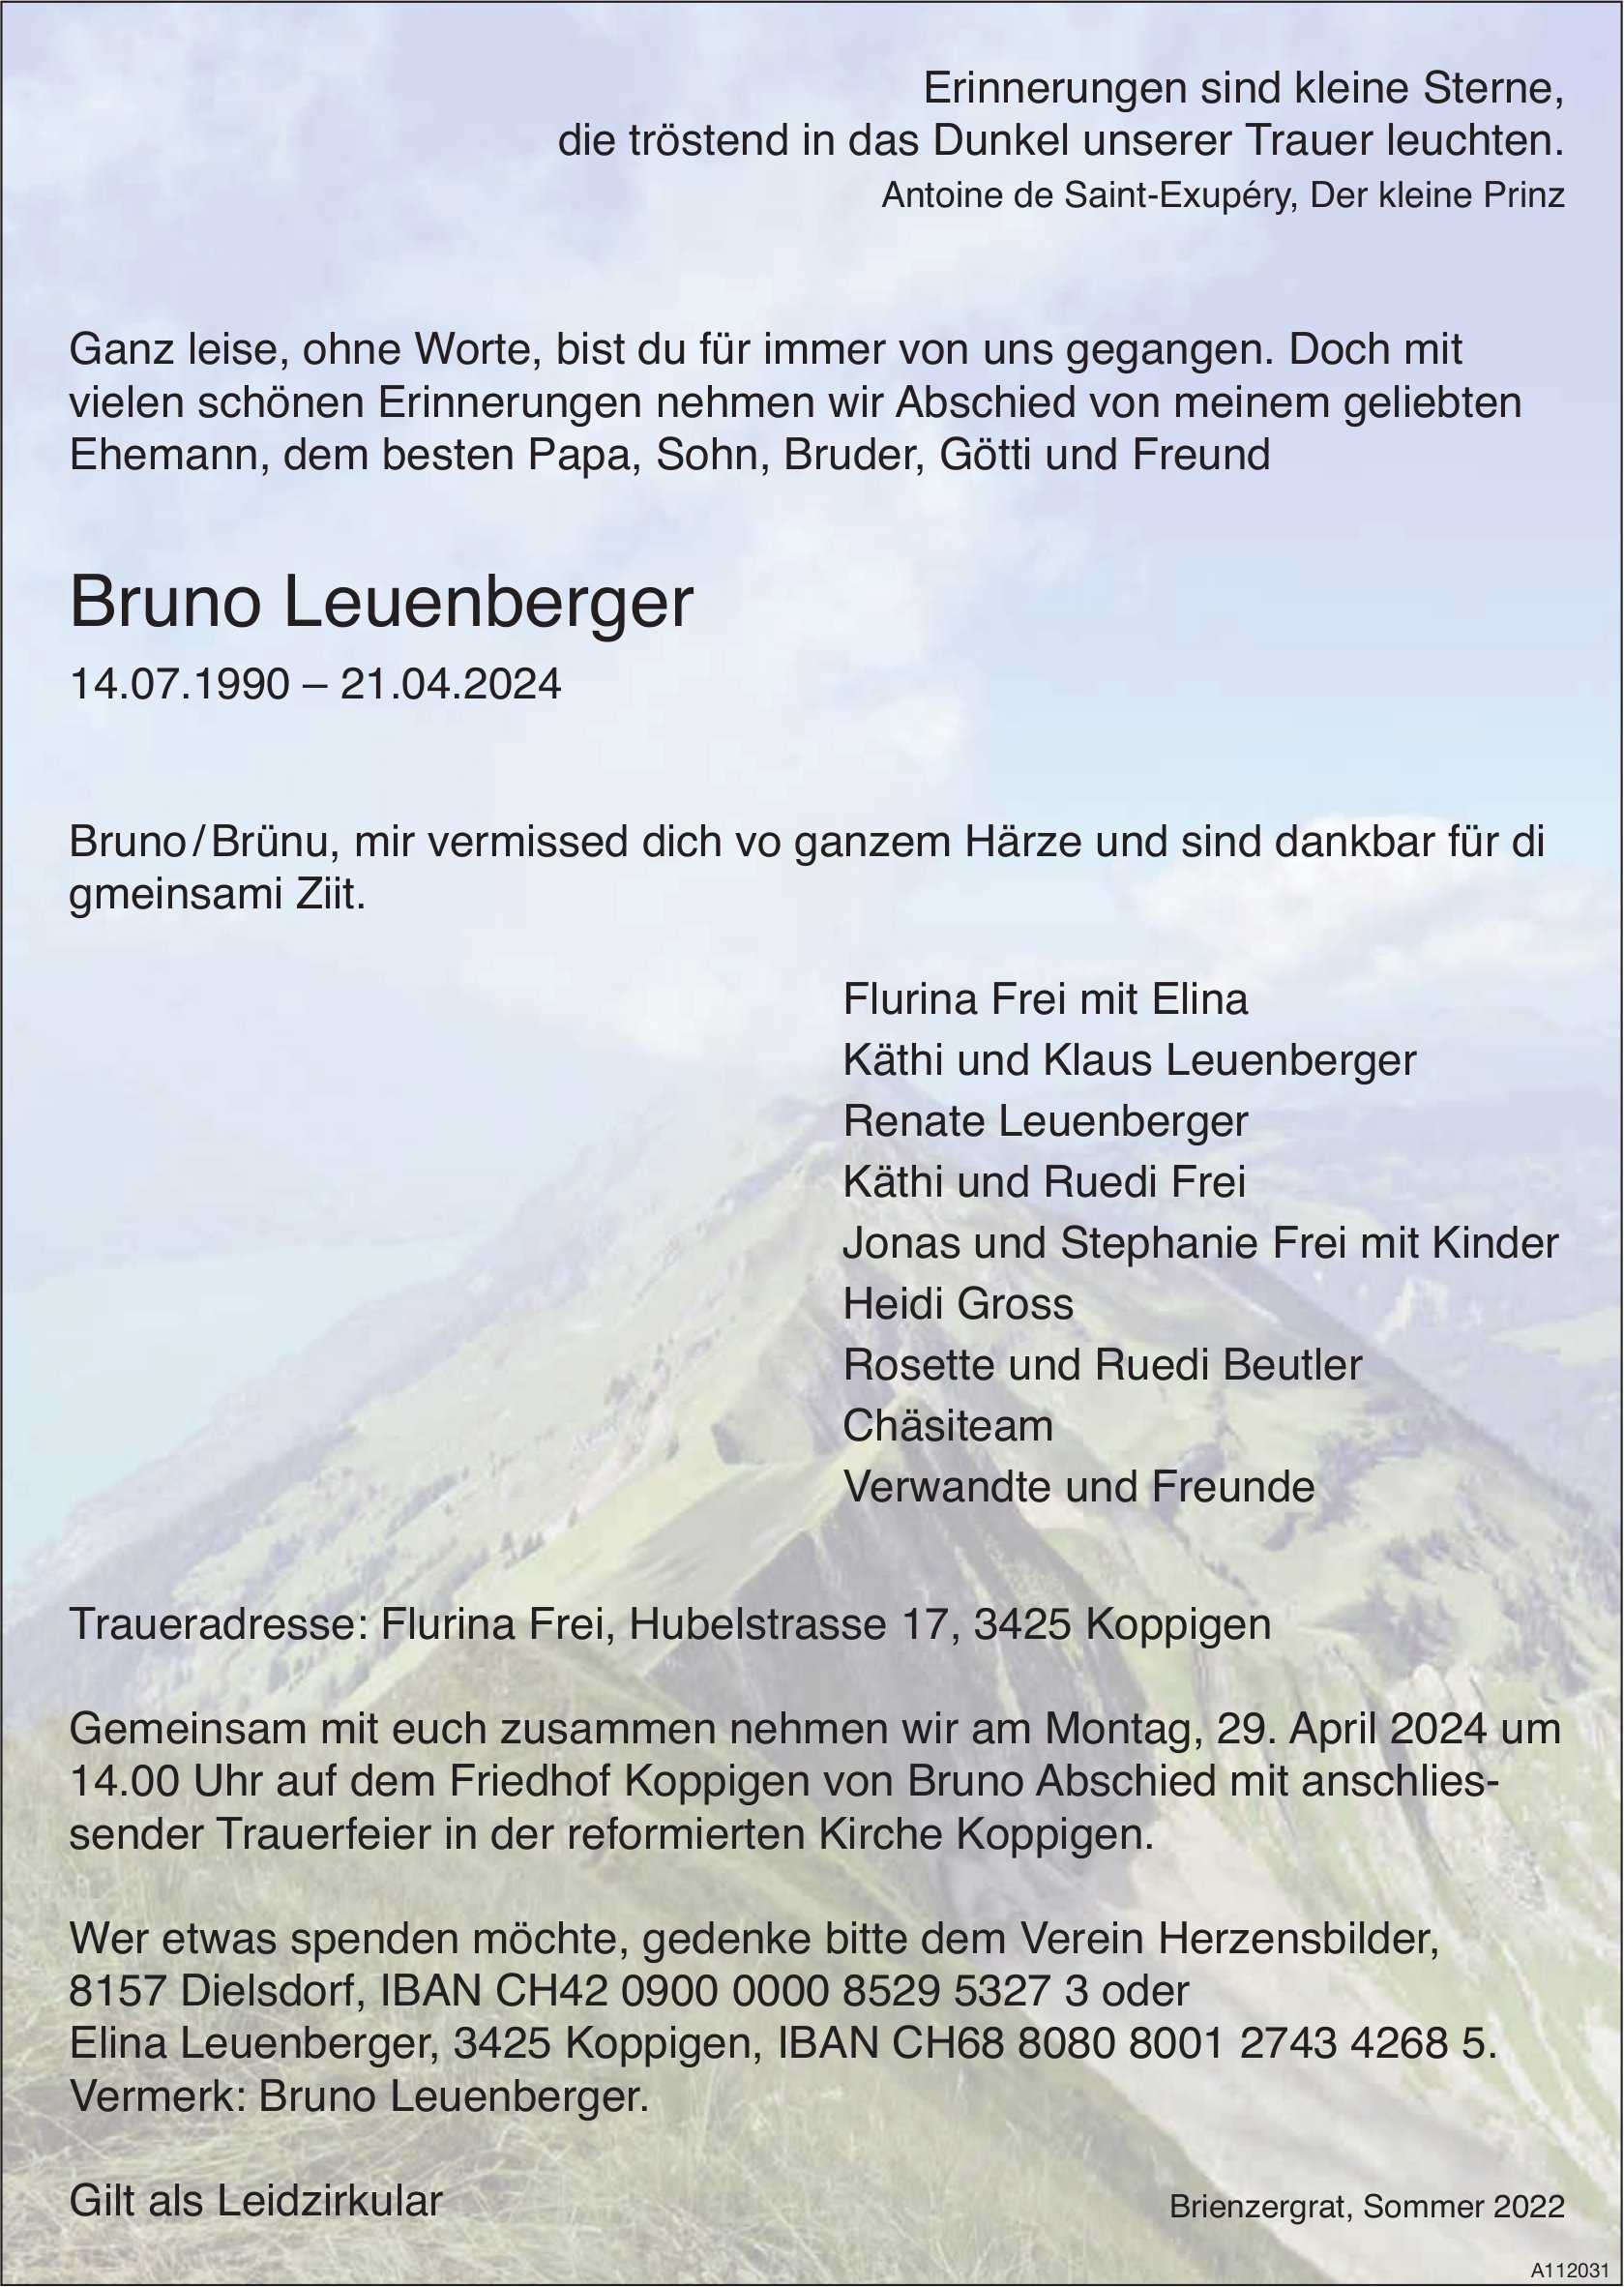 Bruno Leuenberger, April 2024 / TA